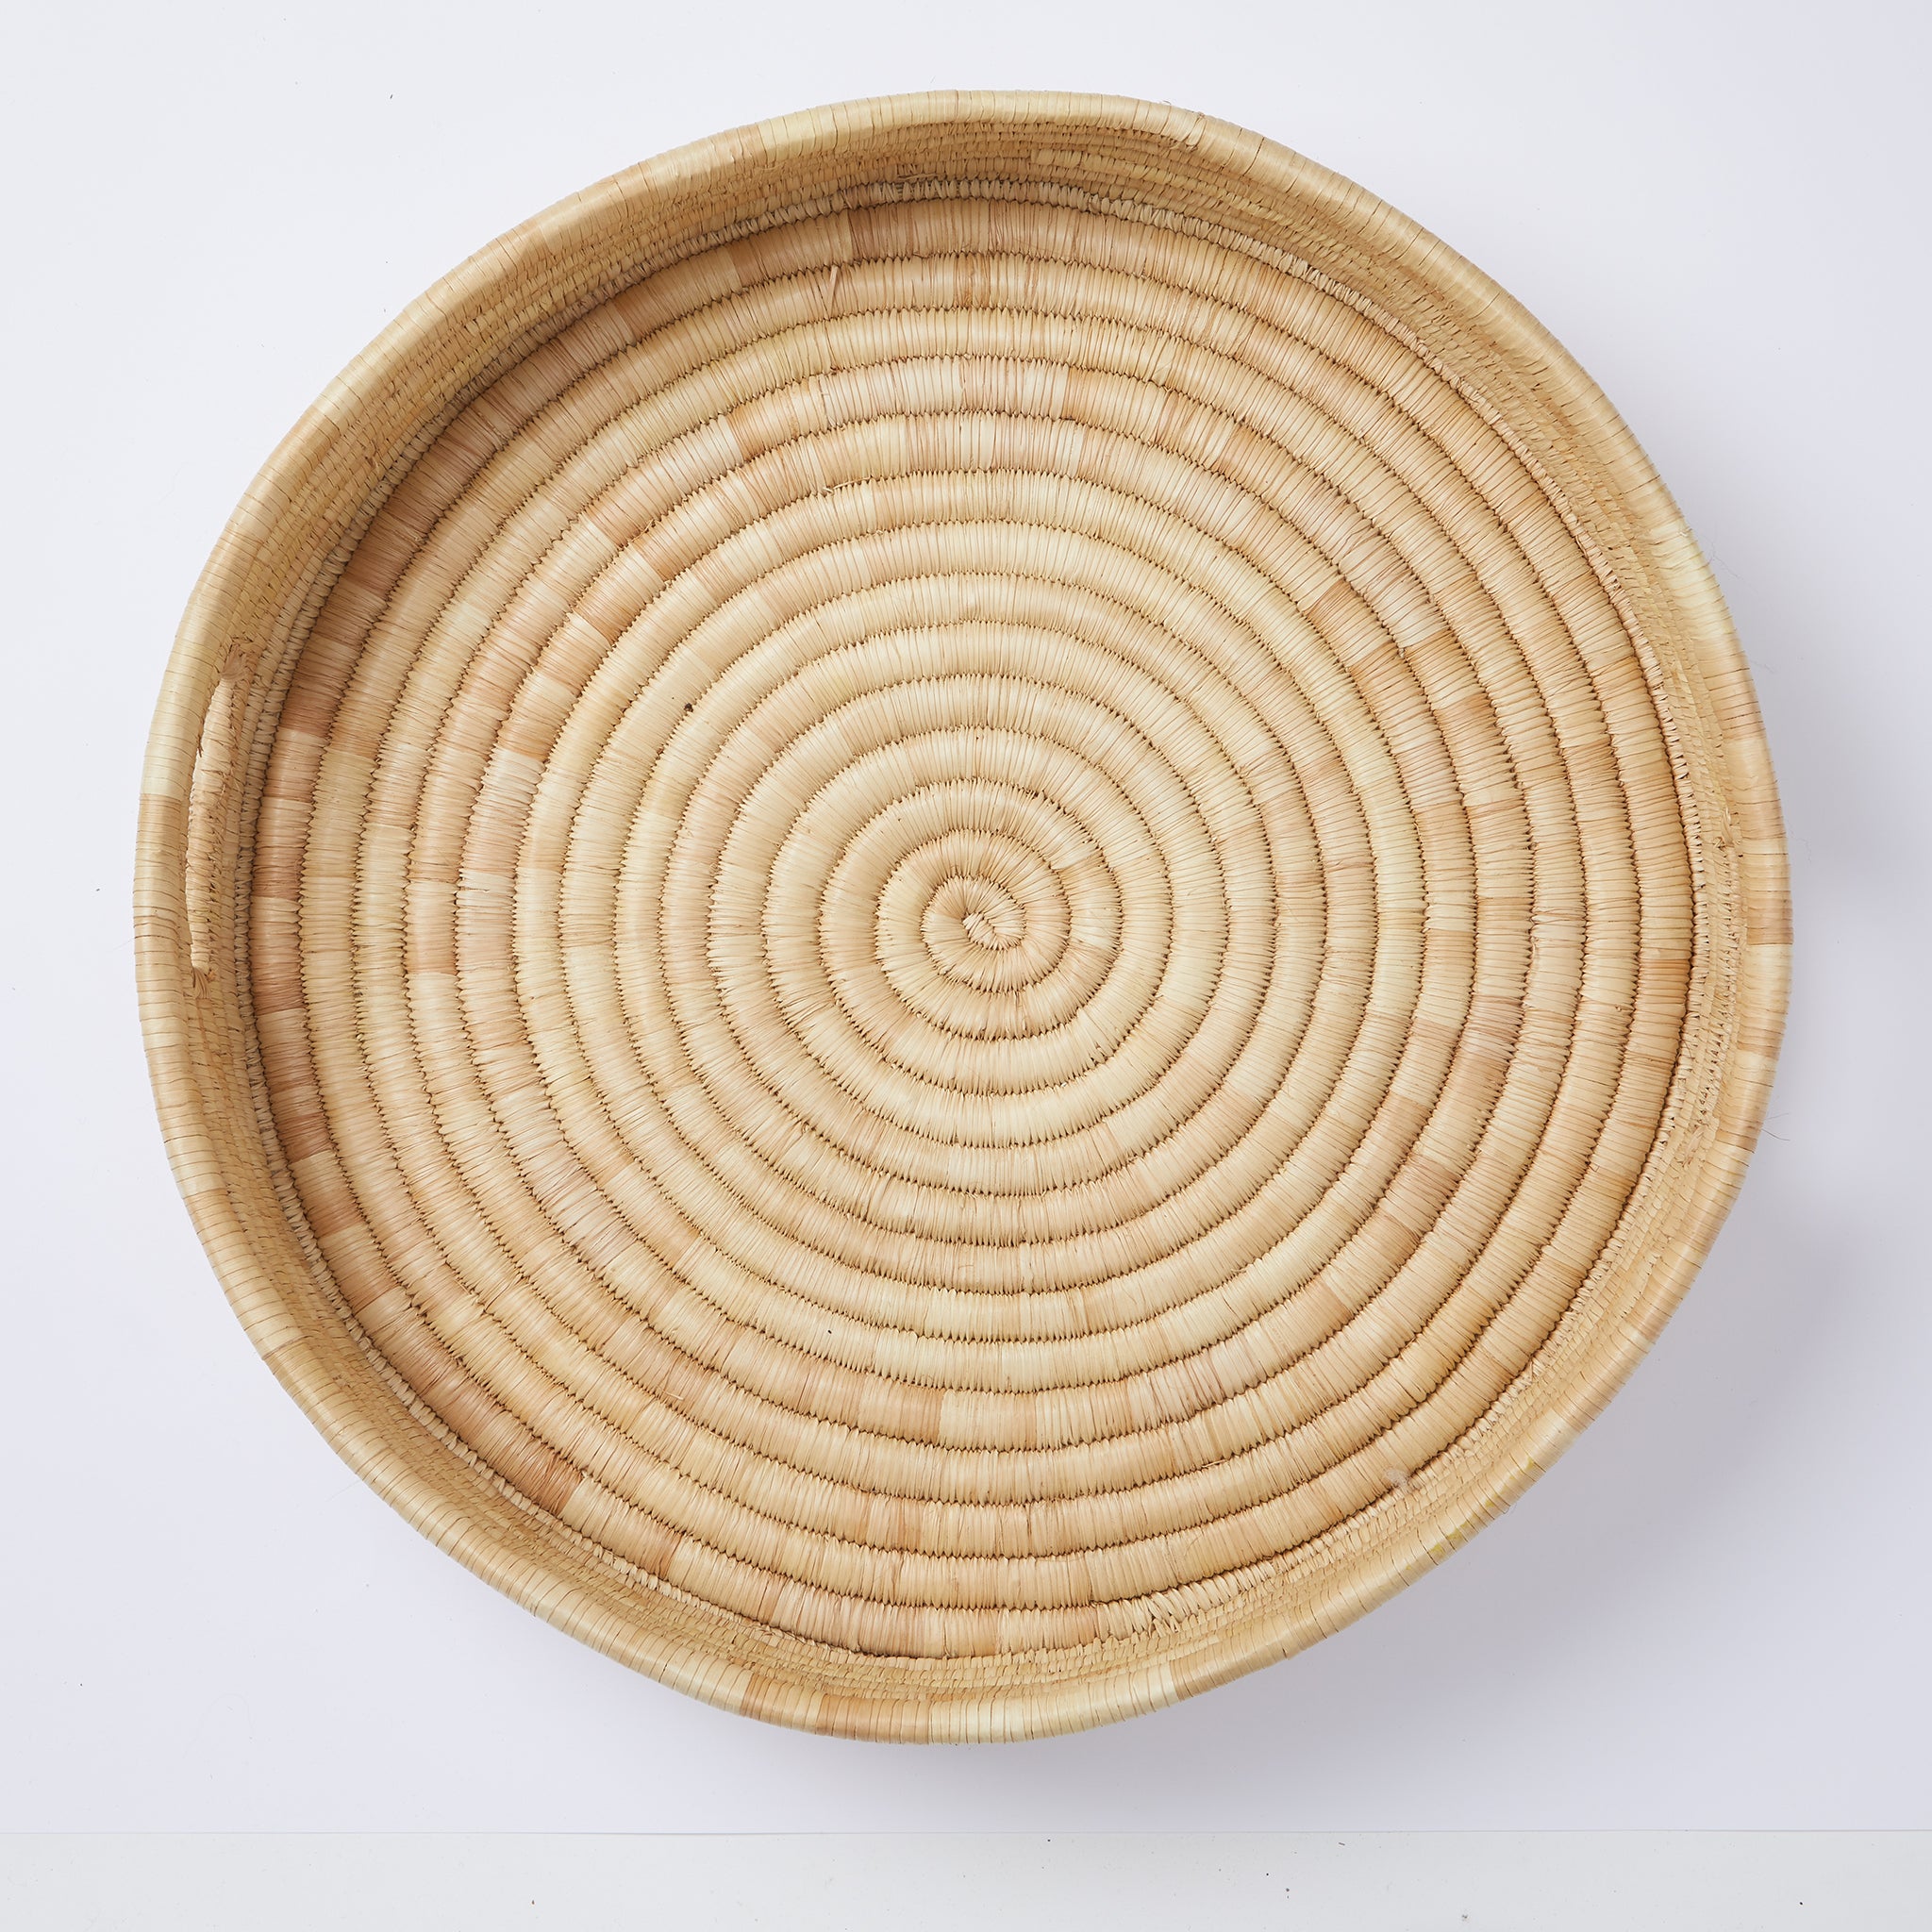 Tablett "Umi" Aufsicht. Stilvoll servieren: Das minimalistische und sehr stabile Tablett "Umi" wird sorgfältig aus Palmenblättern geflochten. Ein lässiger Allrounder für dein Zuhause.   Durchmesser: 50 cm Höhe: 10 cm